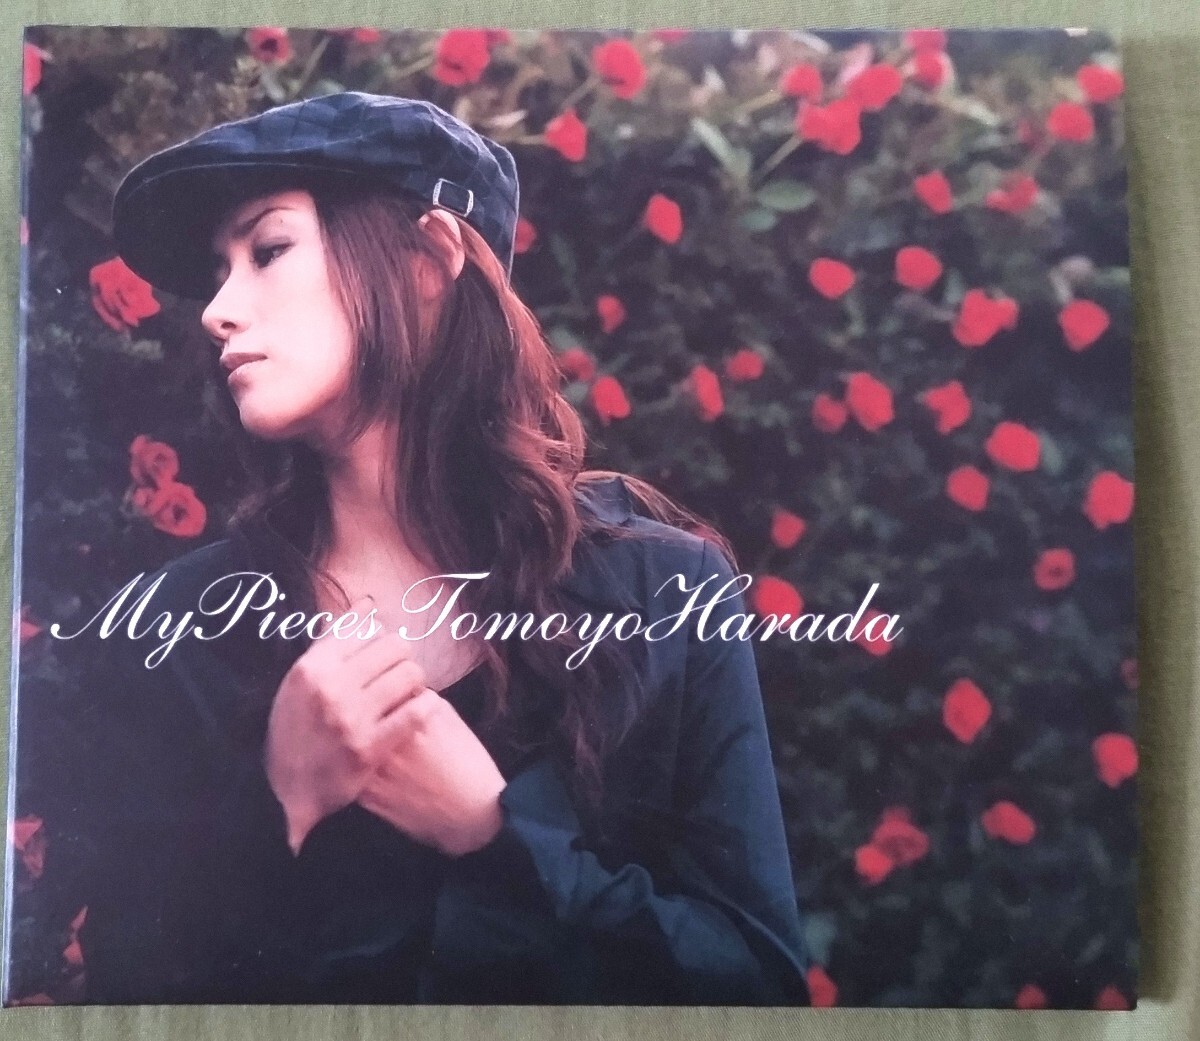  не продается образец запись CD Harada Tomoyo My Pieces бумага jacket 